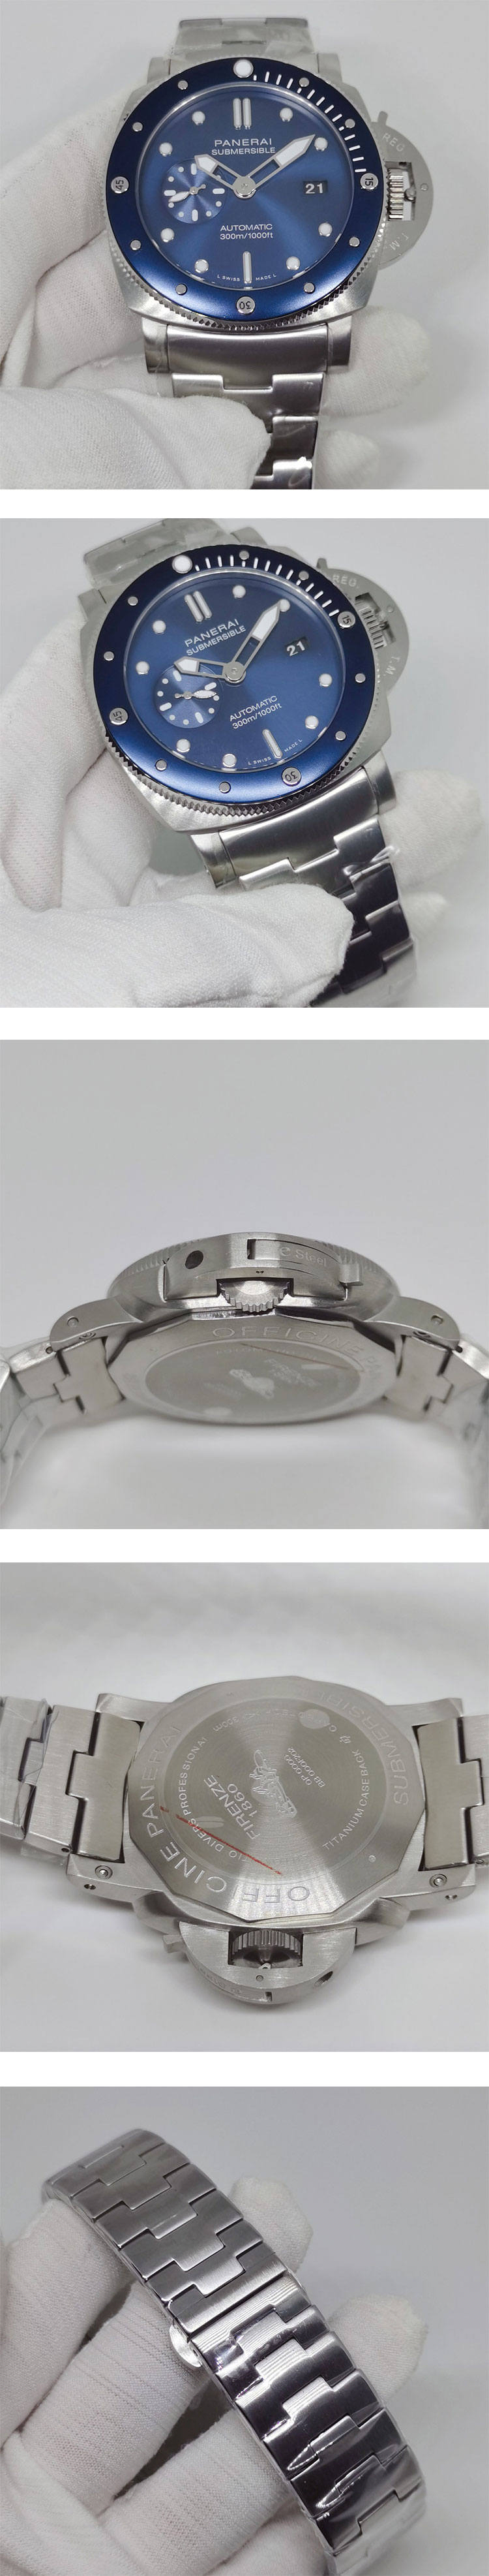 OFFICINE PANERAIコピー ルミノール 47MM ブルーノッテ PAM01068 メンズ腕時計